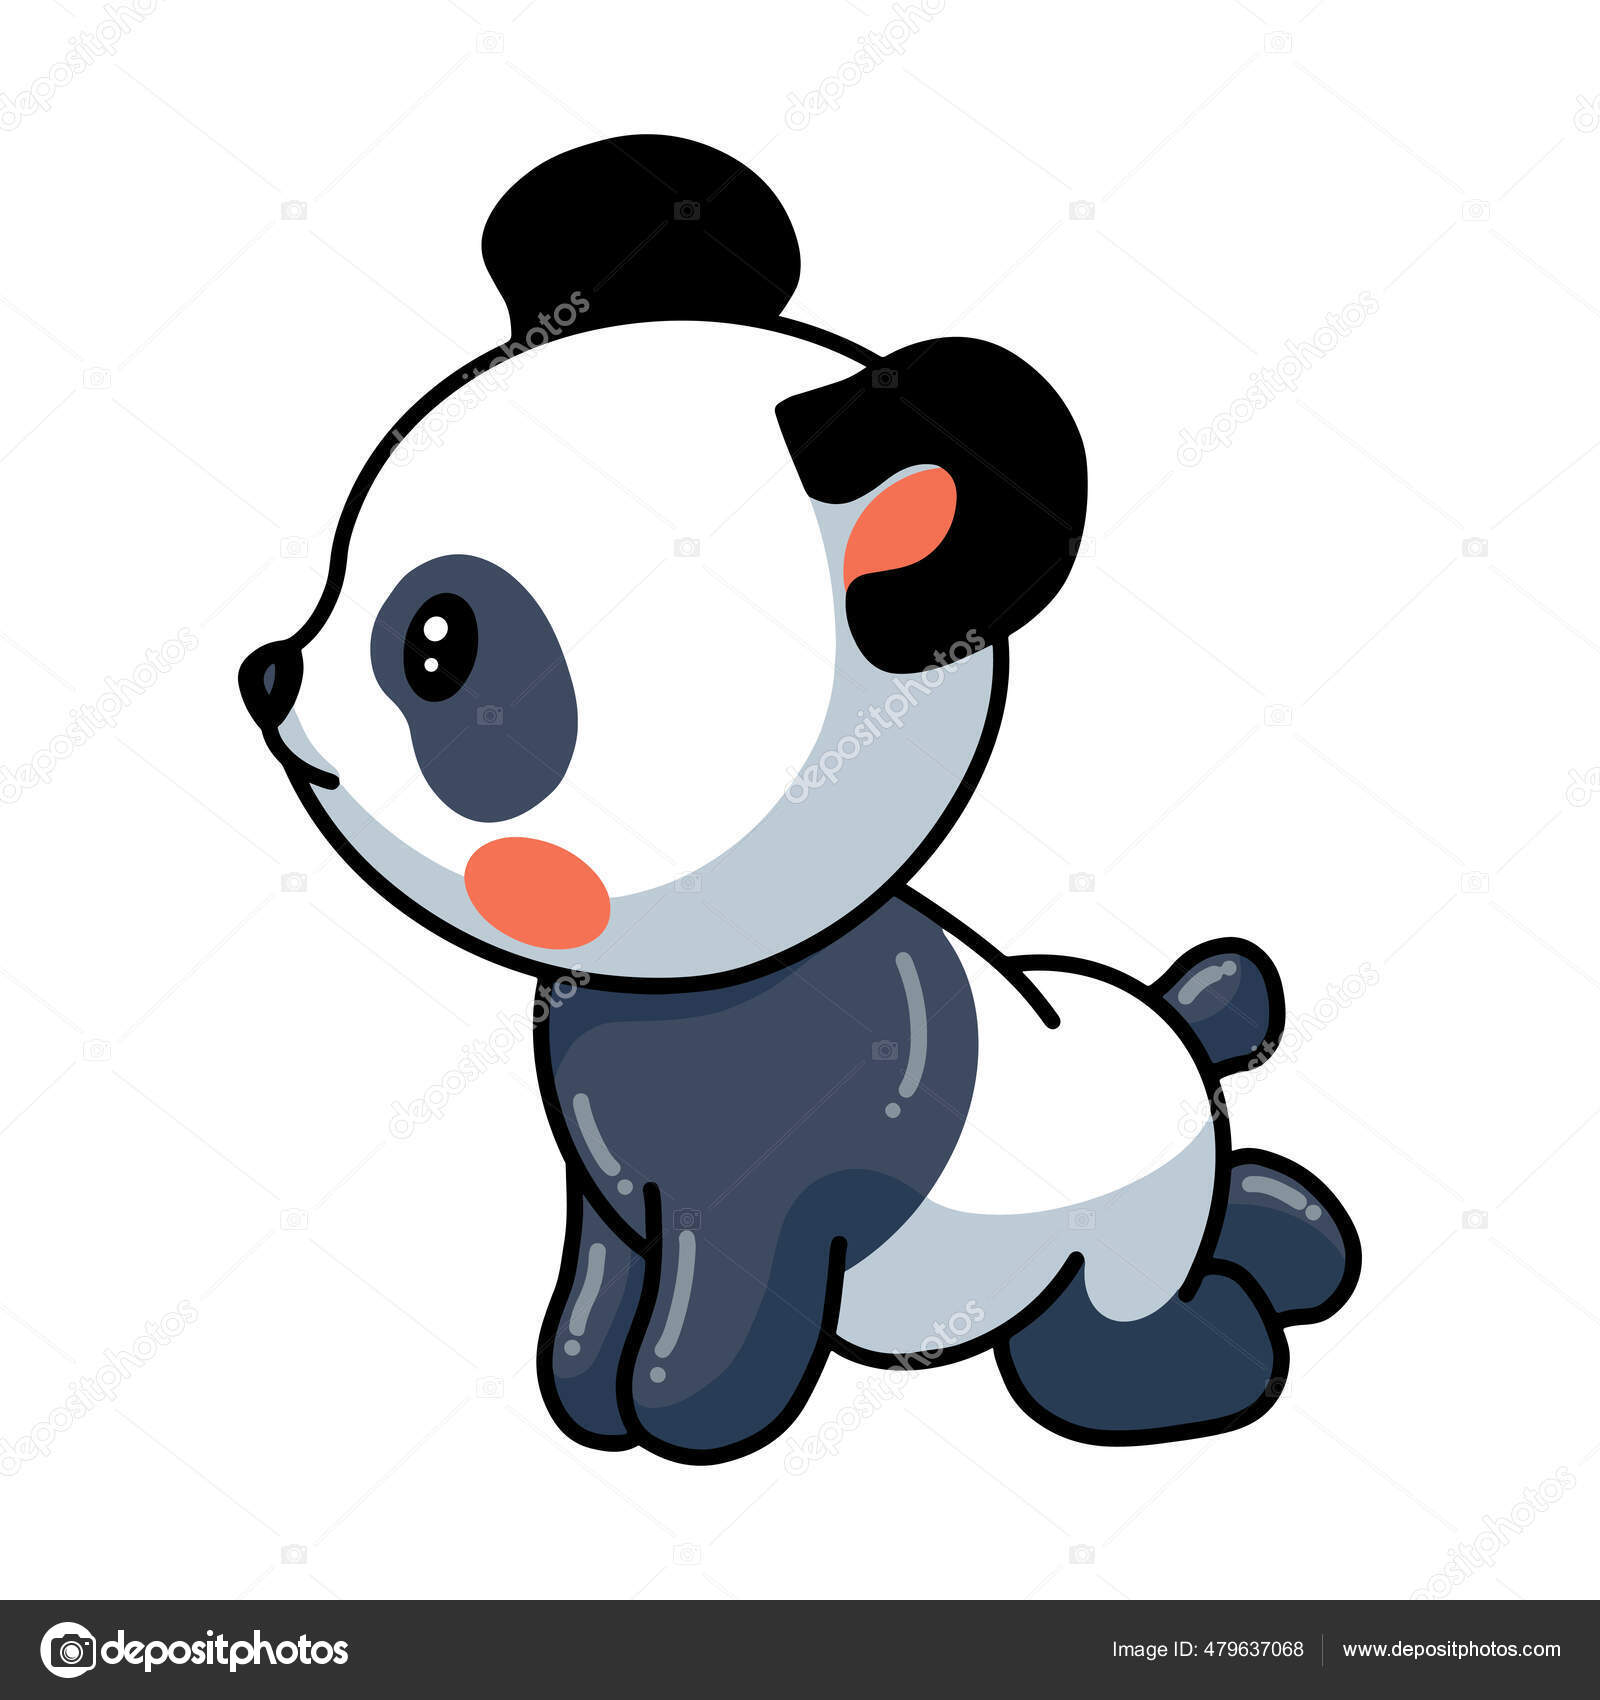 Ilustração de desenhos animados de panda com raiva posando isolado